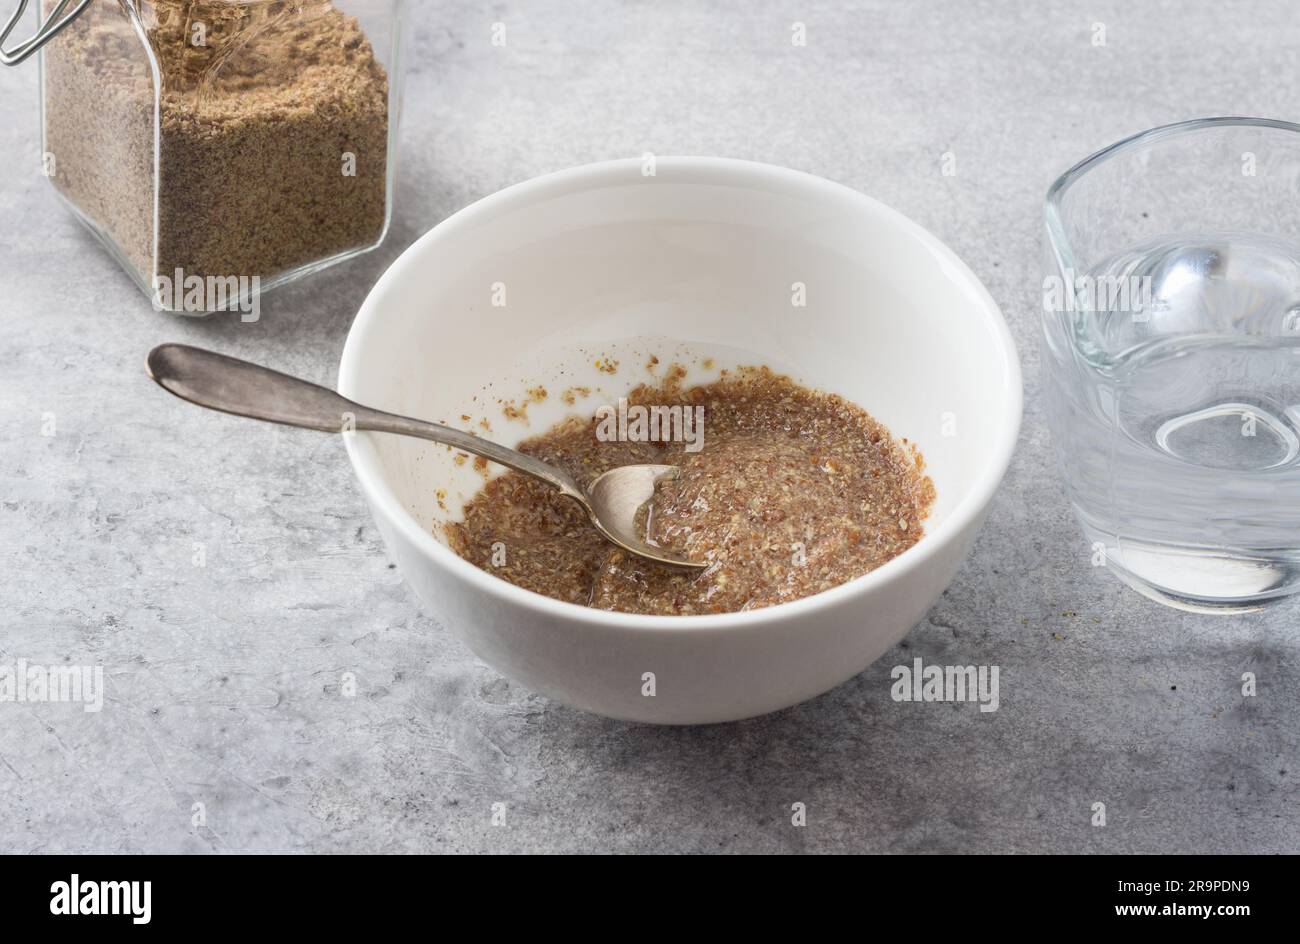 Un bol avec du lin moulu et de l'eau, un pot de lin moulu et un pot d'eau sur fond texturé gris. Cuisson d'un œuf de lin végétalien. Banque D'Images